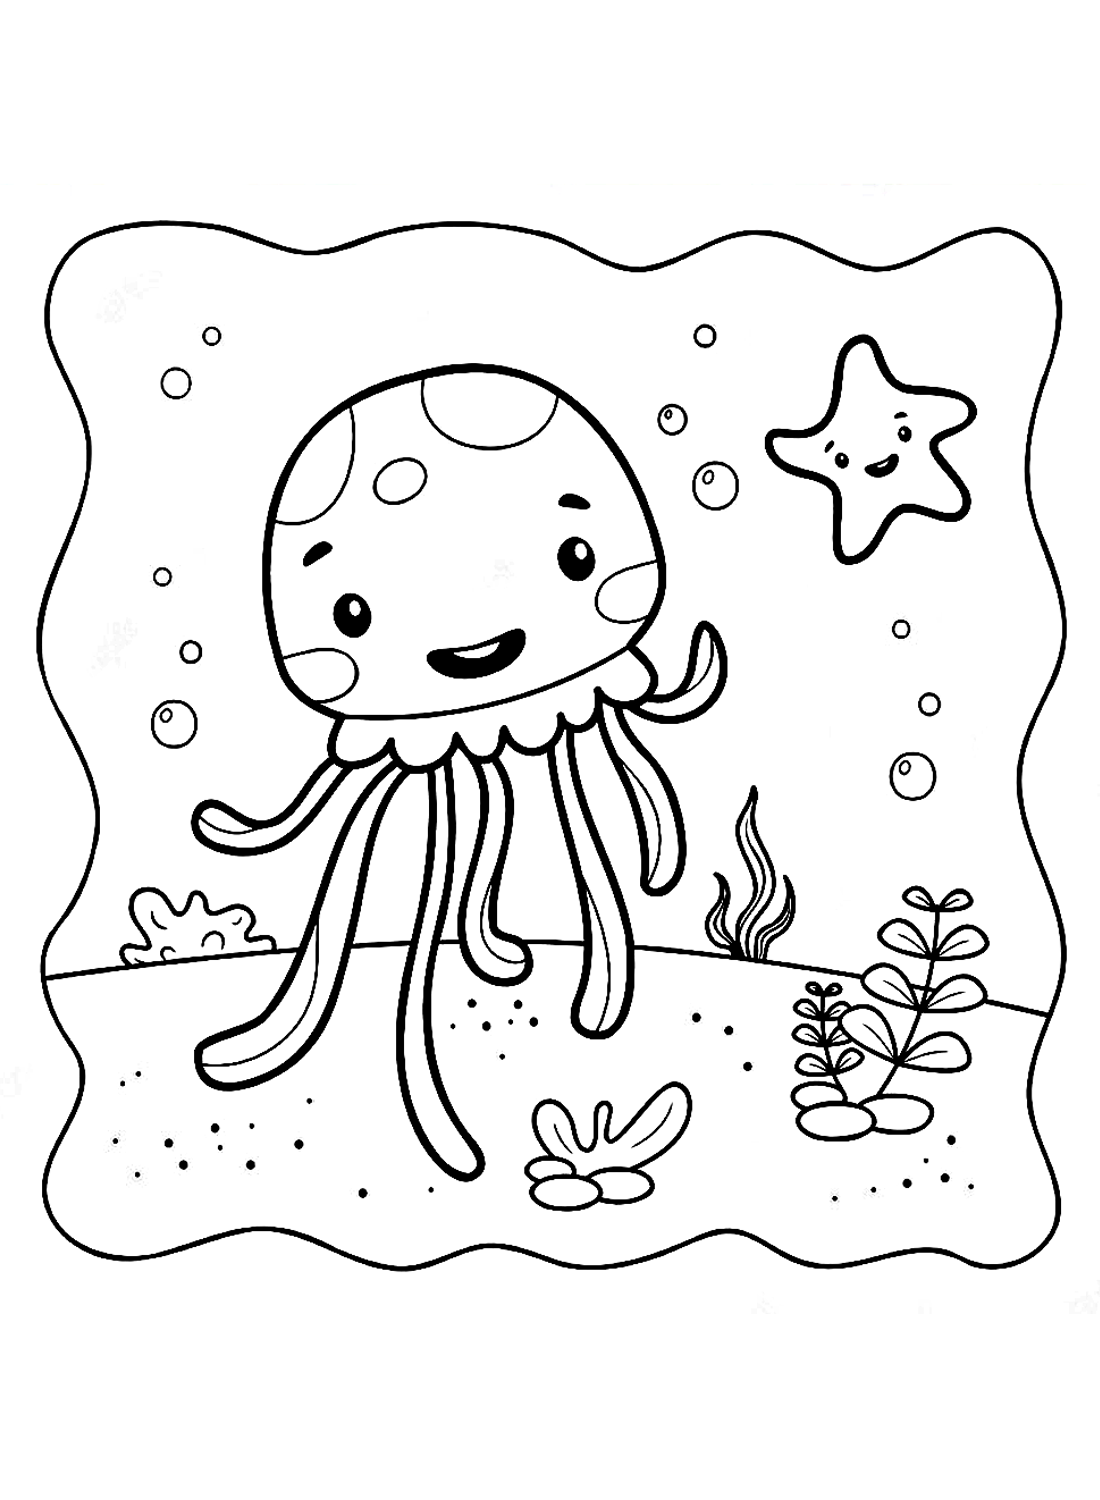 Una bella pagina da colorare di meduse